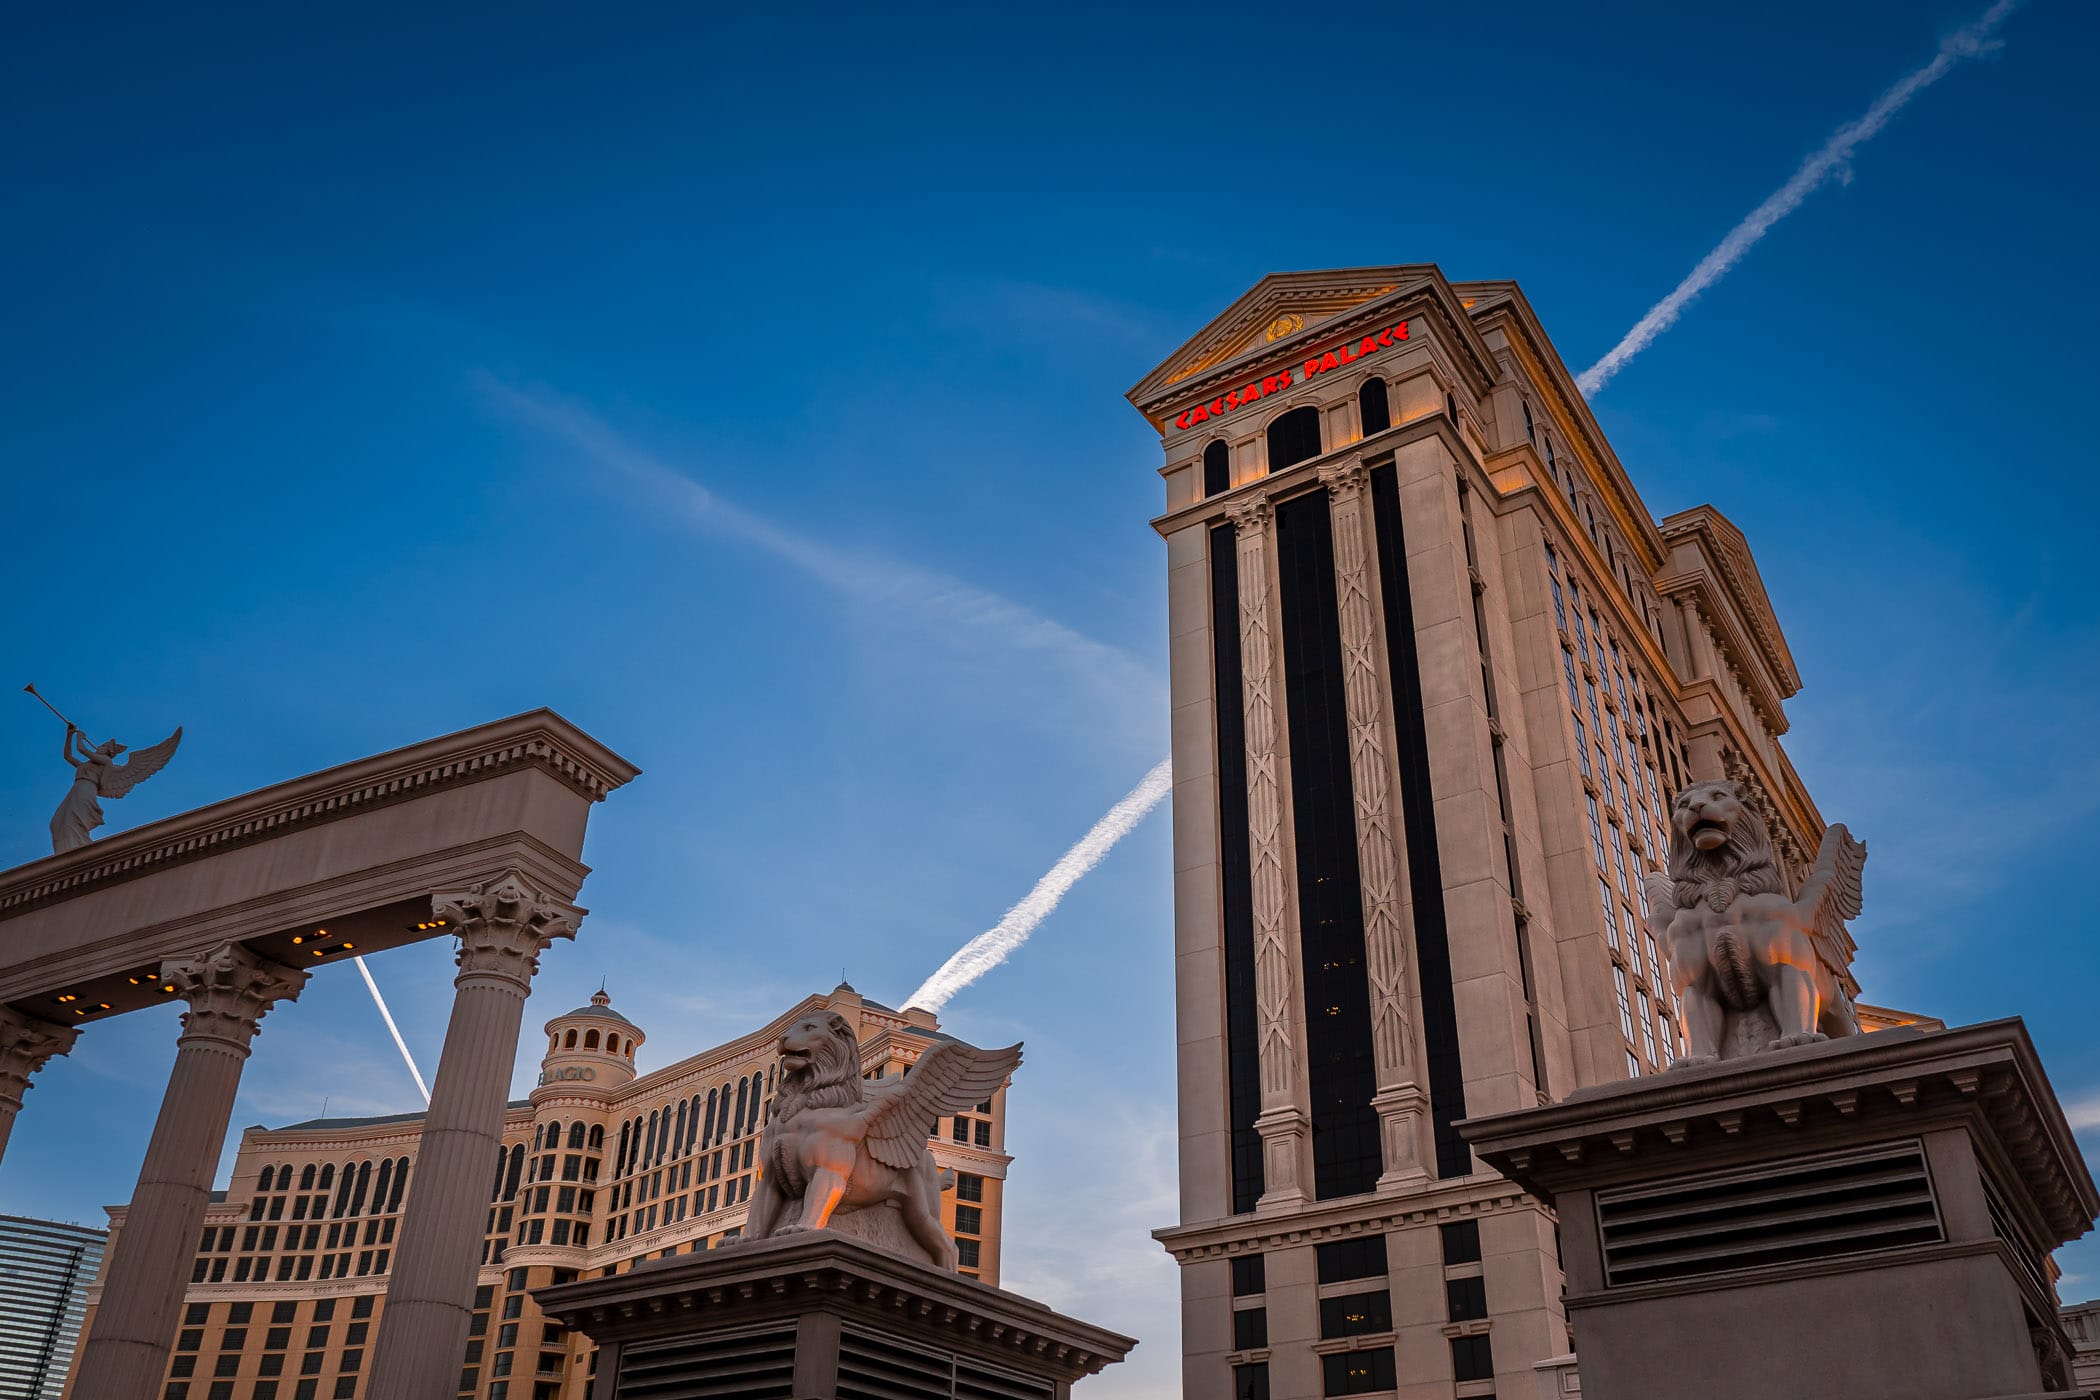 Las Vegas' Caesars Palace extends into the Nevada sky.